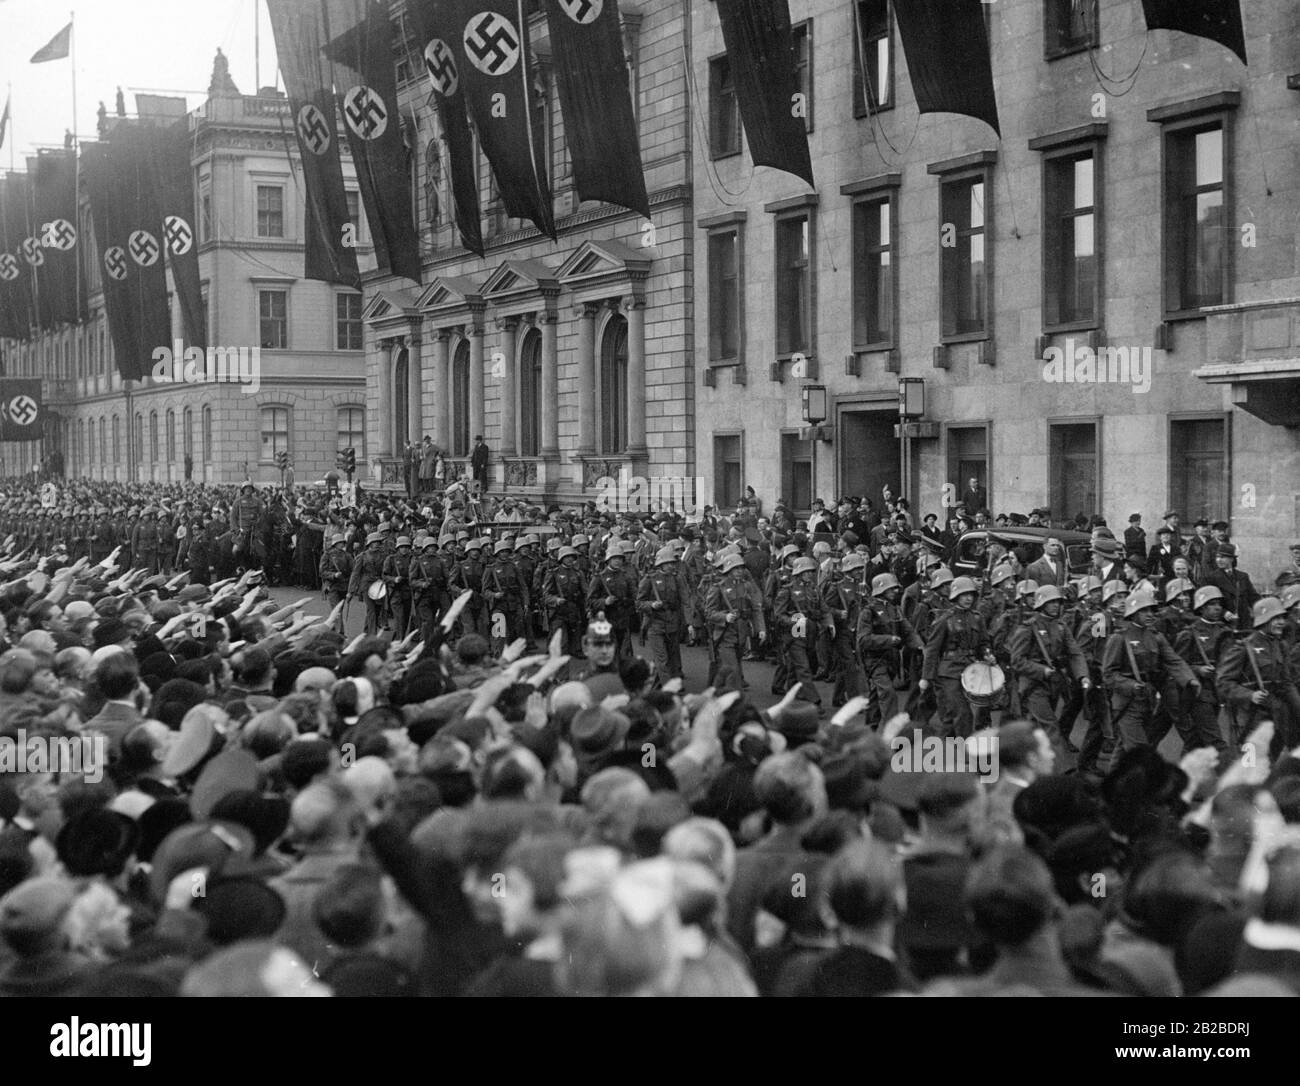 Das Wiener Infanterie-Bataillon wird in Berlin feierlich empfangen. Passanten durchmachen den Straßenrand und machen den Nazi-Salut. Hakenkreuzfahnen werden an den Gebäuden gehisst. Das Bataillon passiert die neue Reichskanzlei. Stockfoto